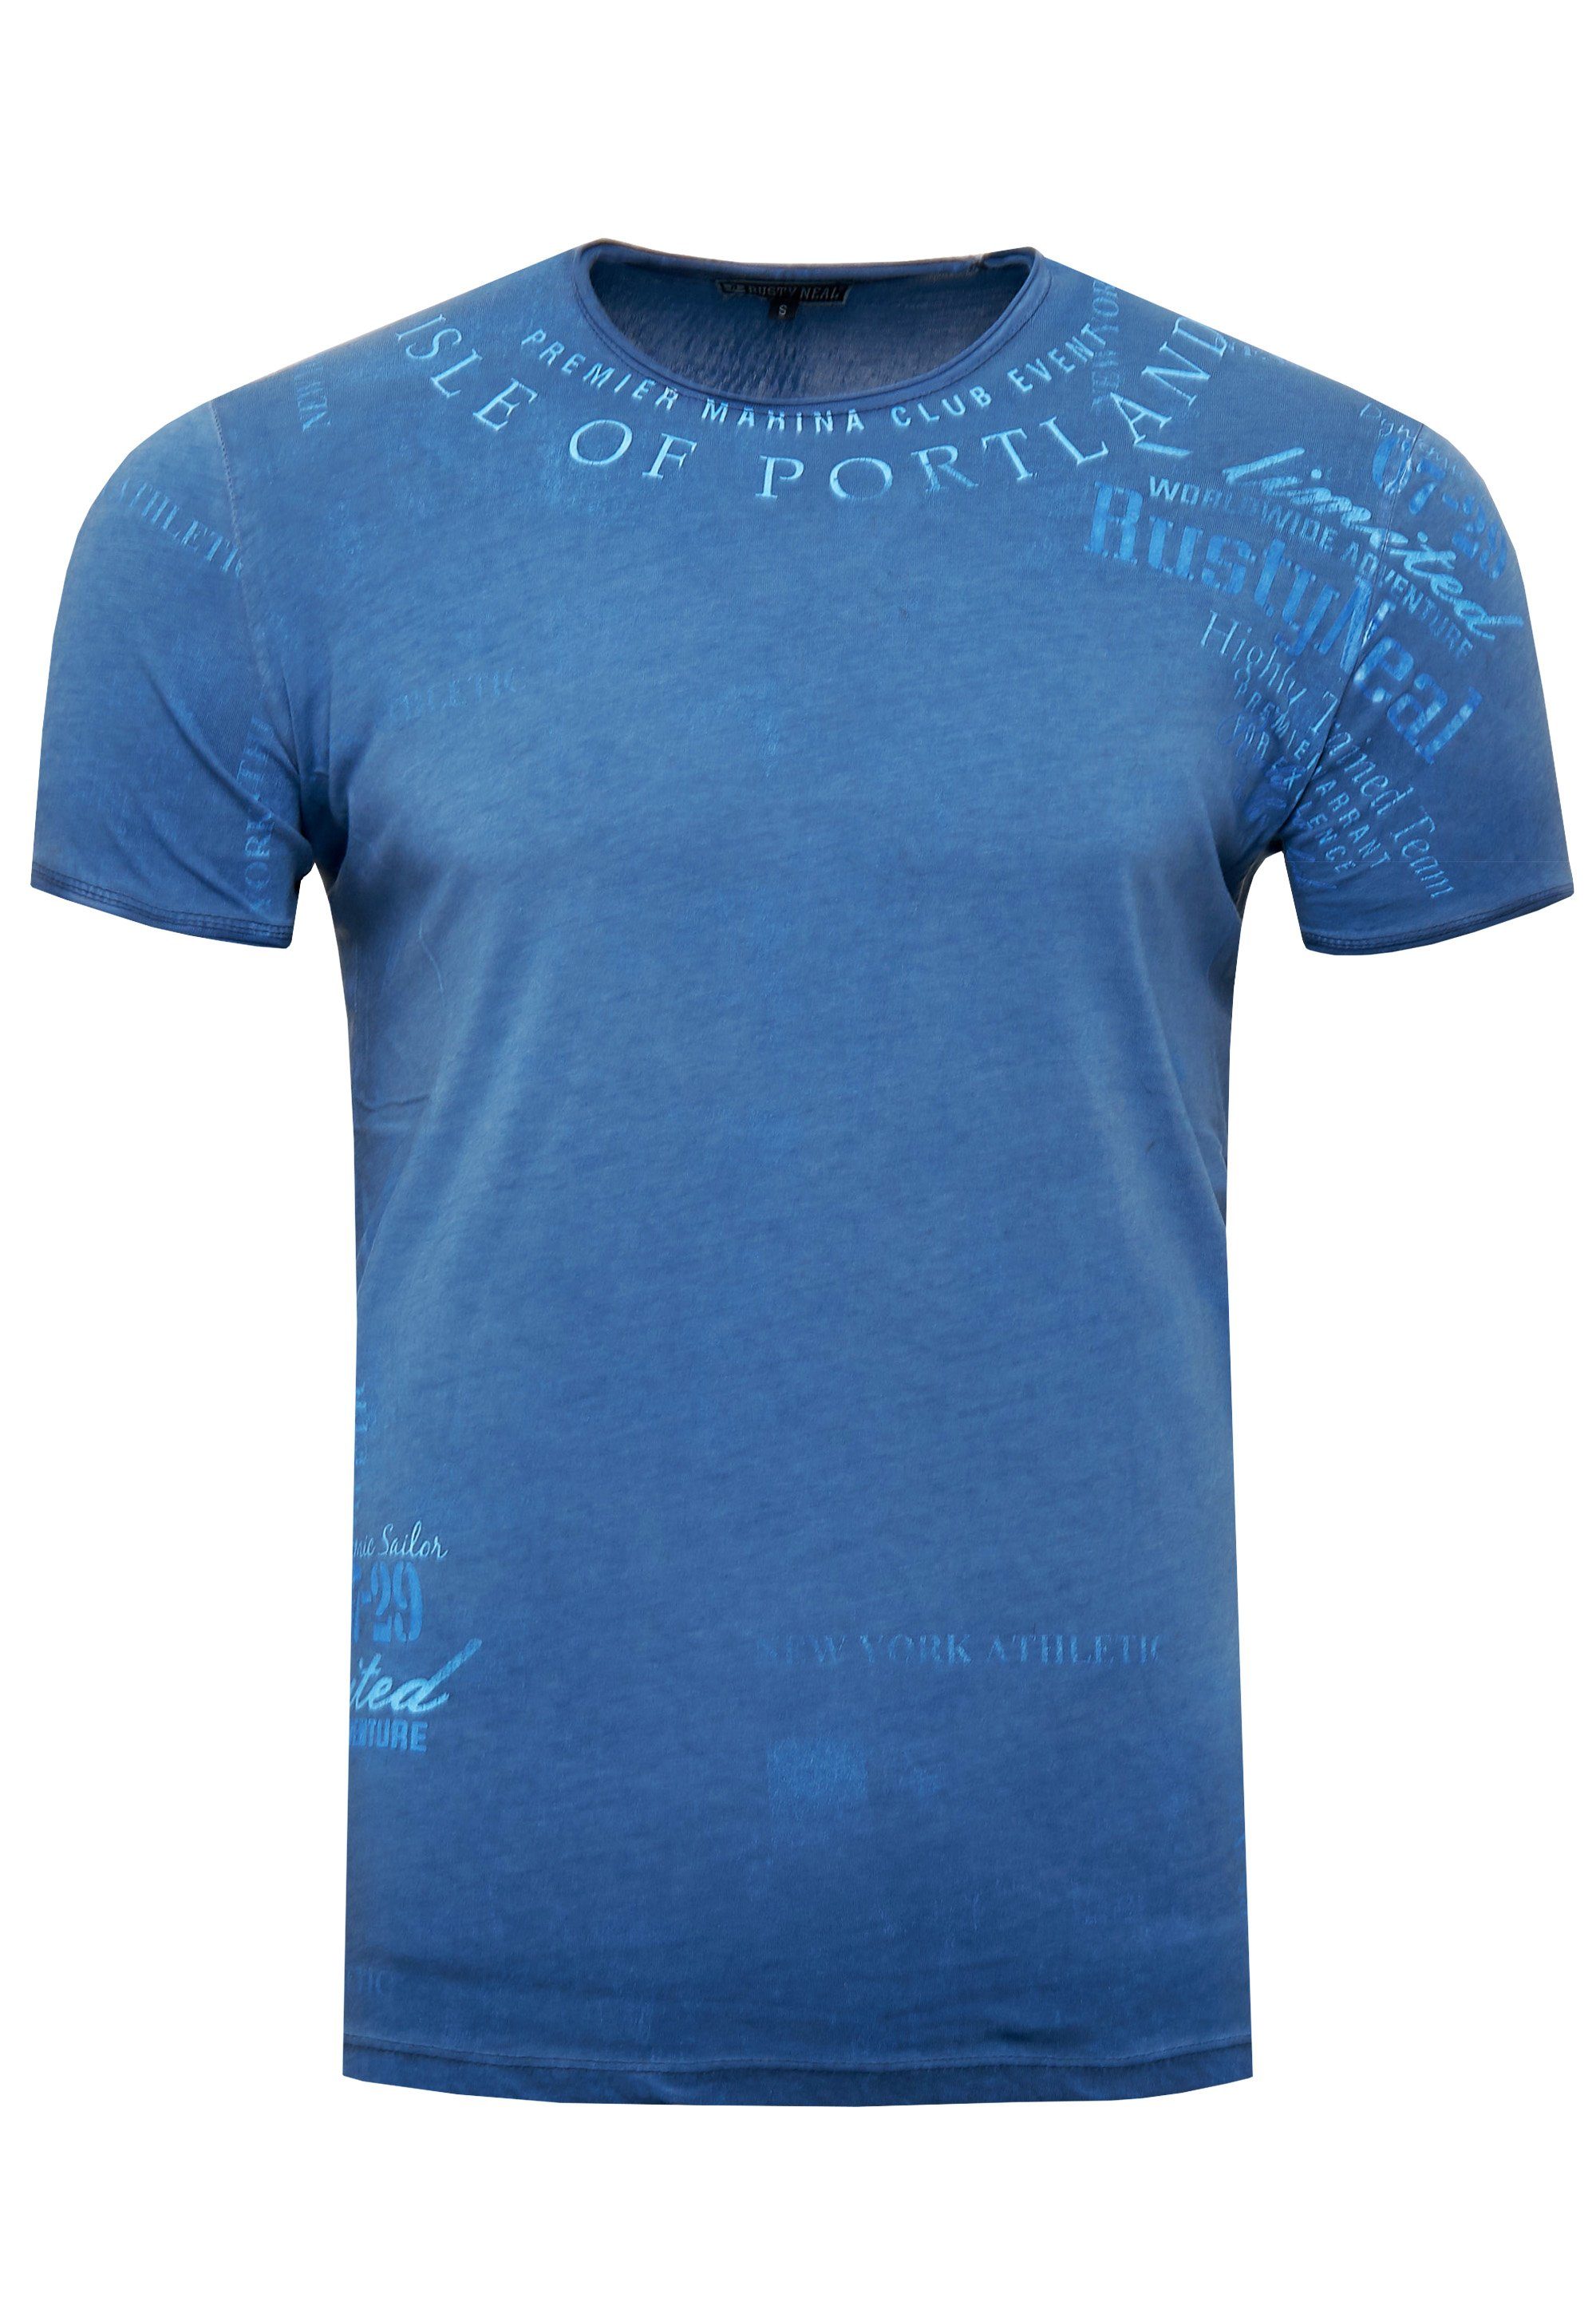 modernem mit T-Shirt blau Print Neal Rusty